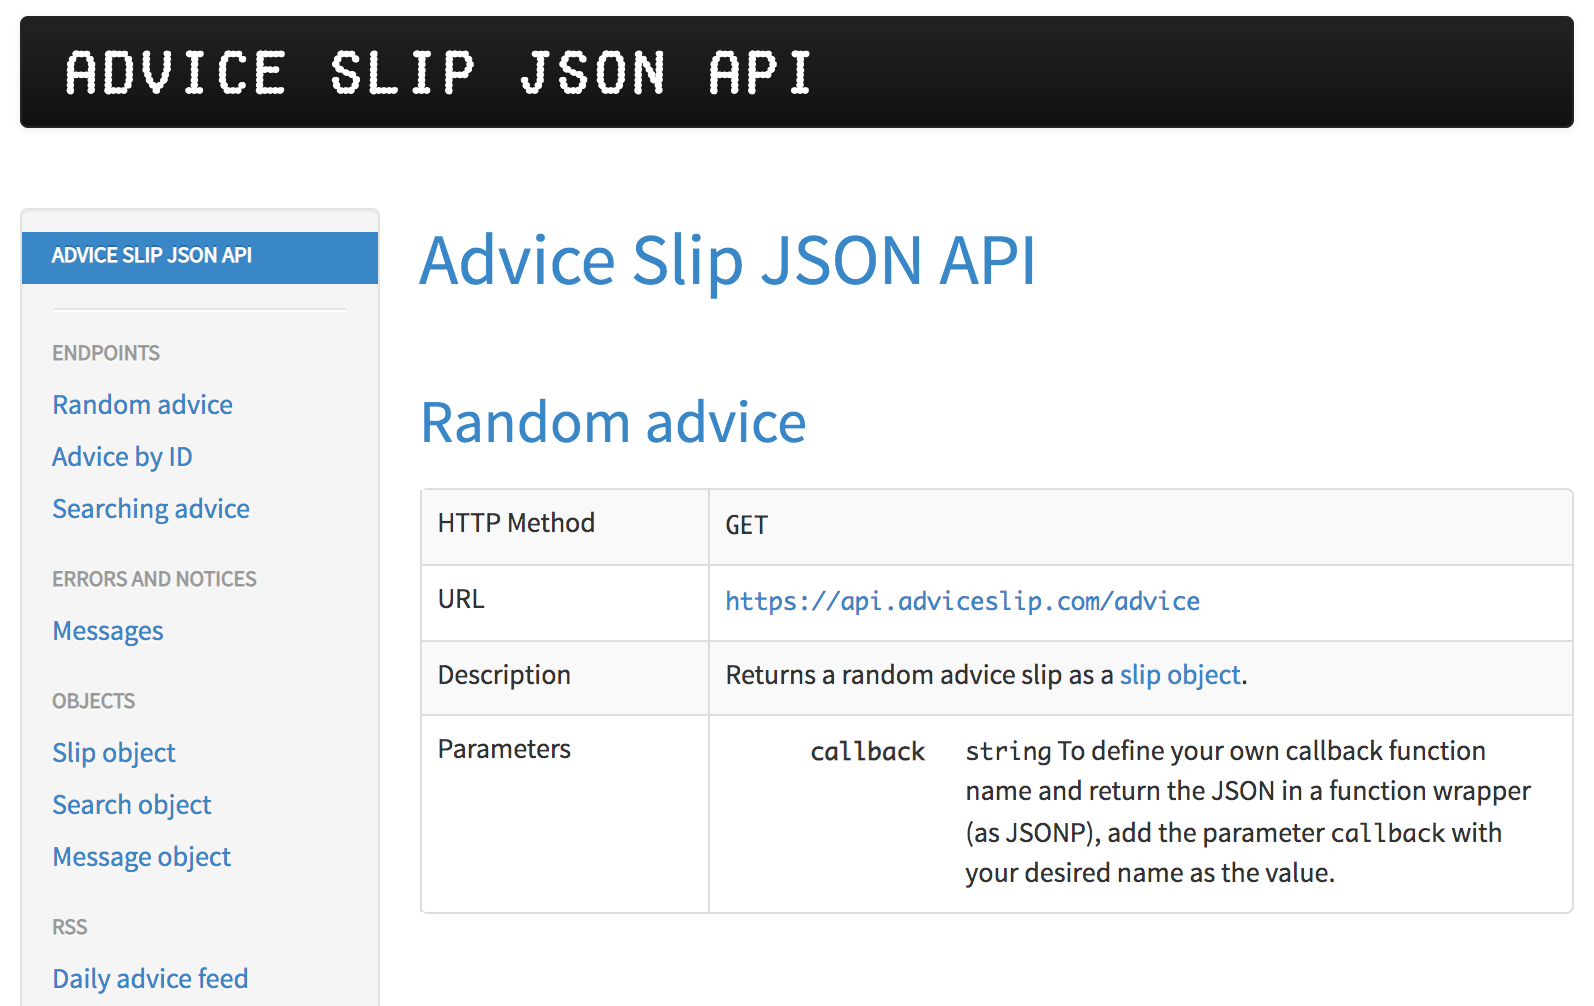 Advice Slip JSON API